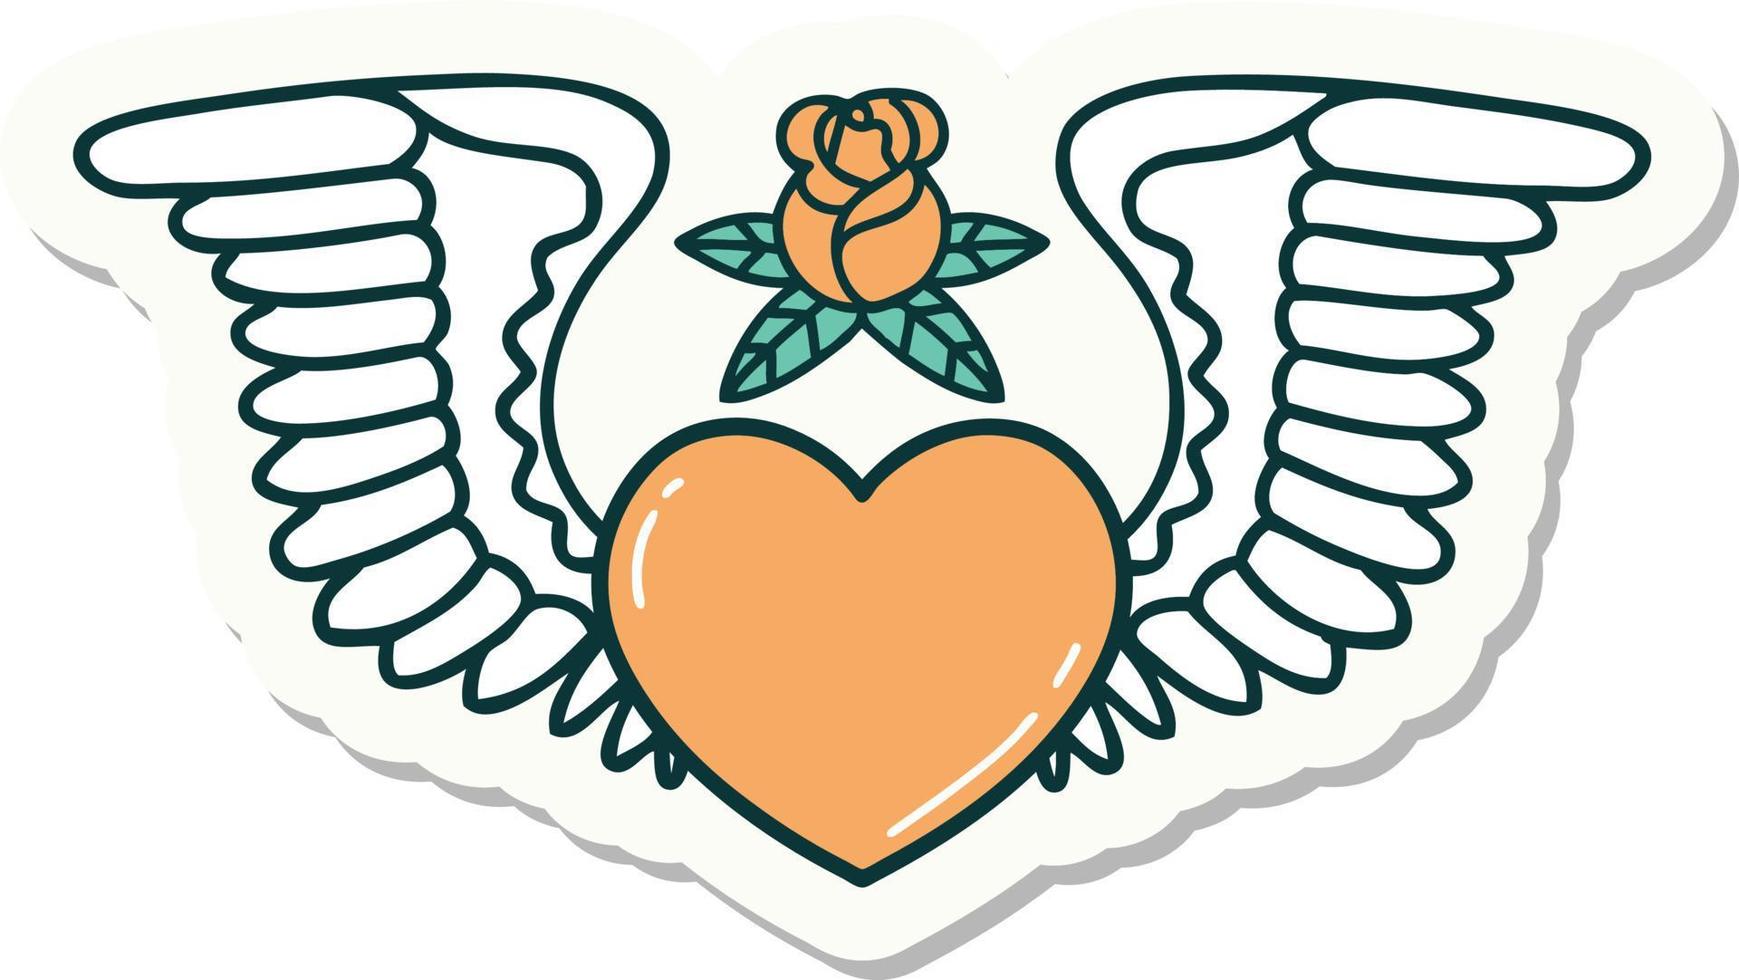 adesivo de tatuagem em estilo tradicional de um coração com asas vetor